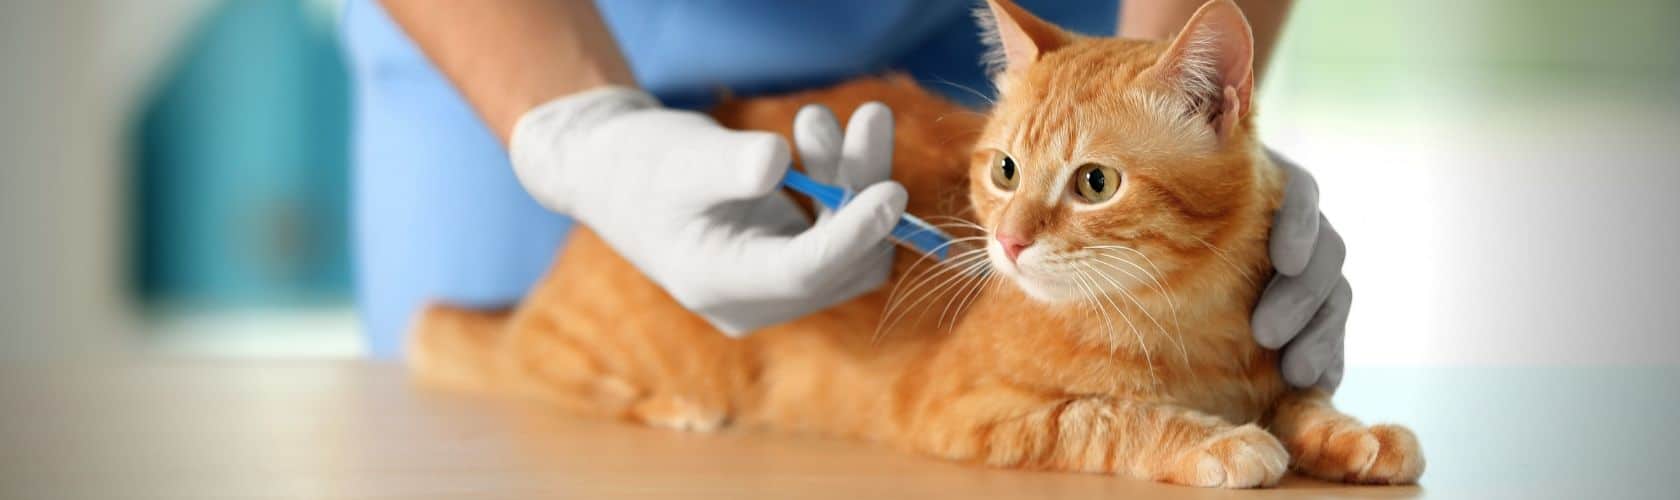 Artes - Blog curto - Dr. Patas 24.03 cirurgia em gatos vila mariana